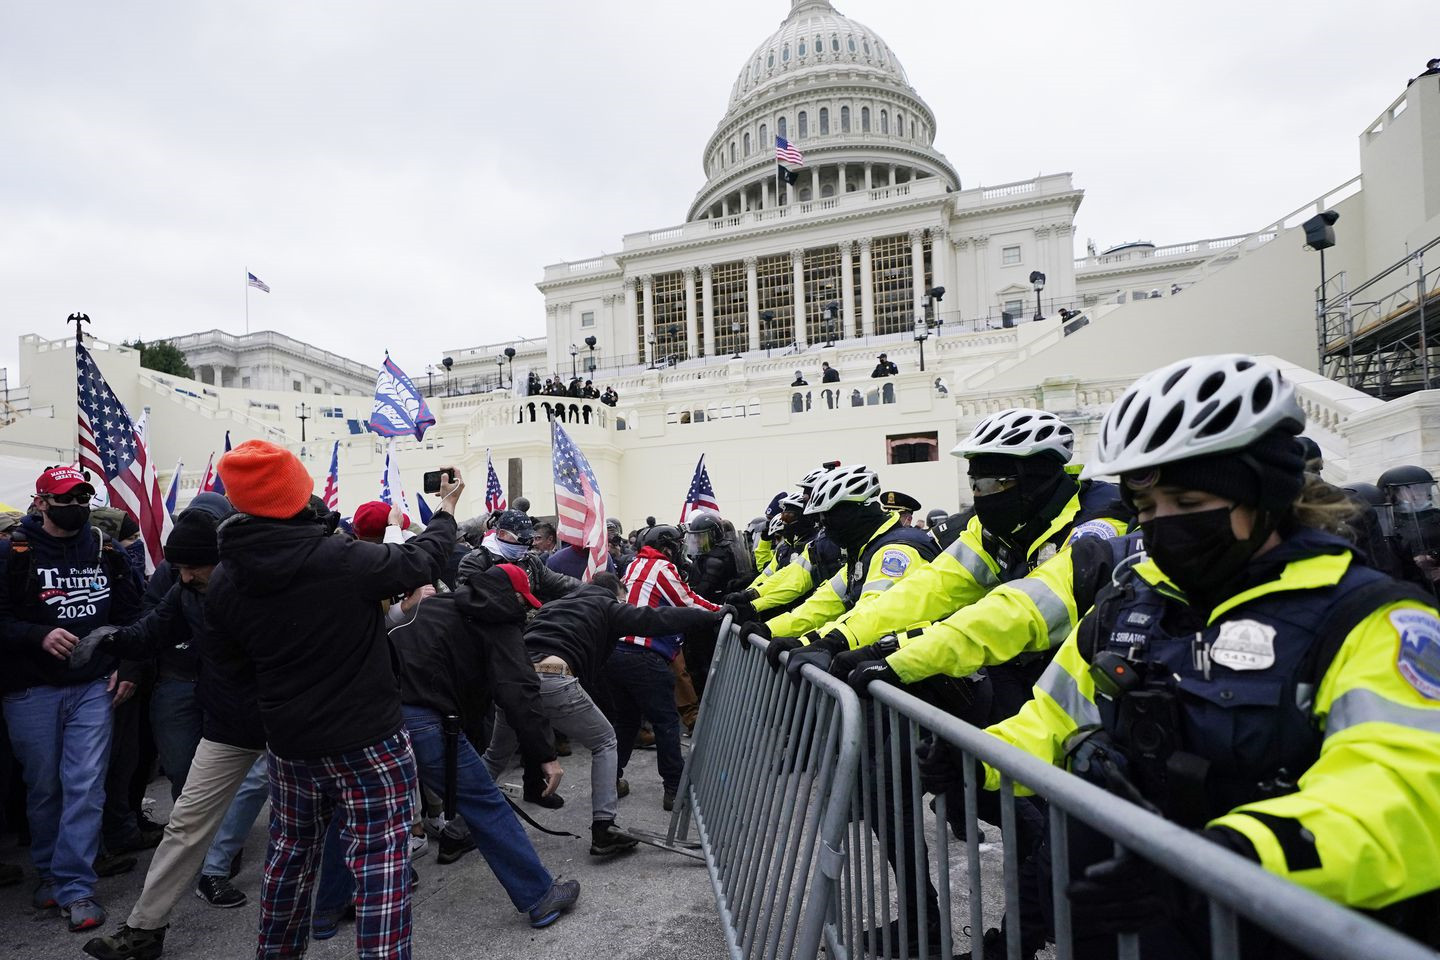 Trực tiếp: Người ủng hộ Trump xông vào toà nhà Quốc hội, Điện Capitol tê liệt - 2